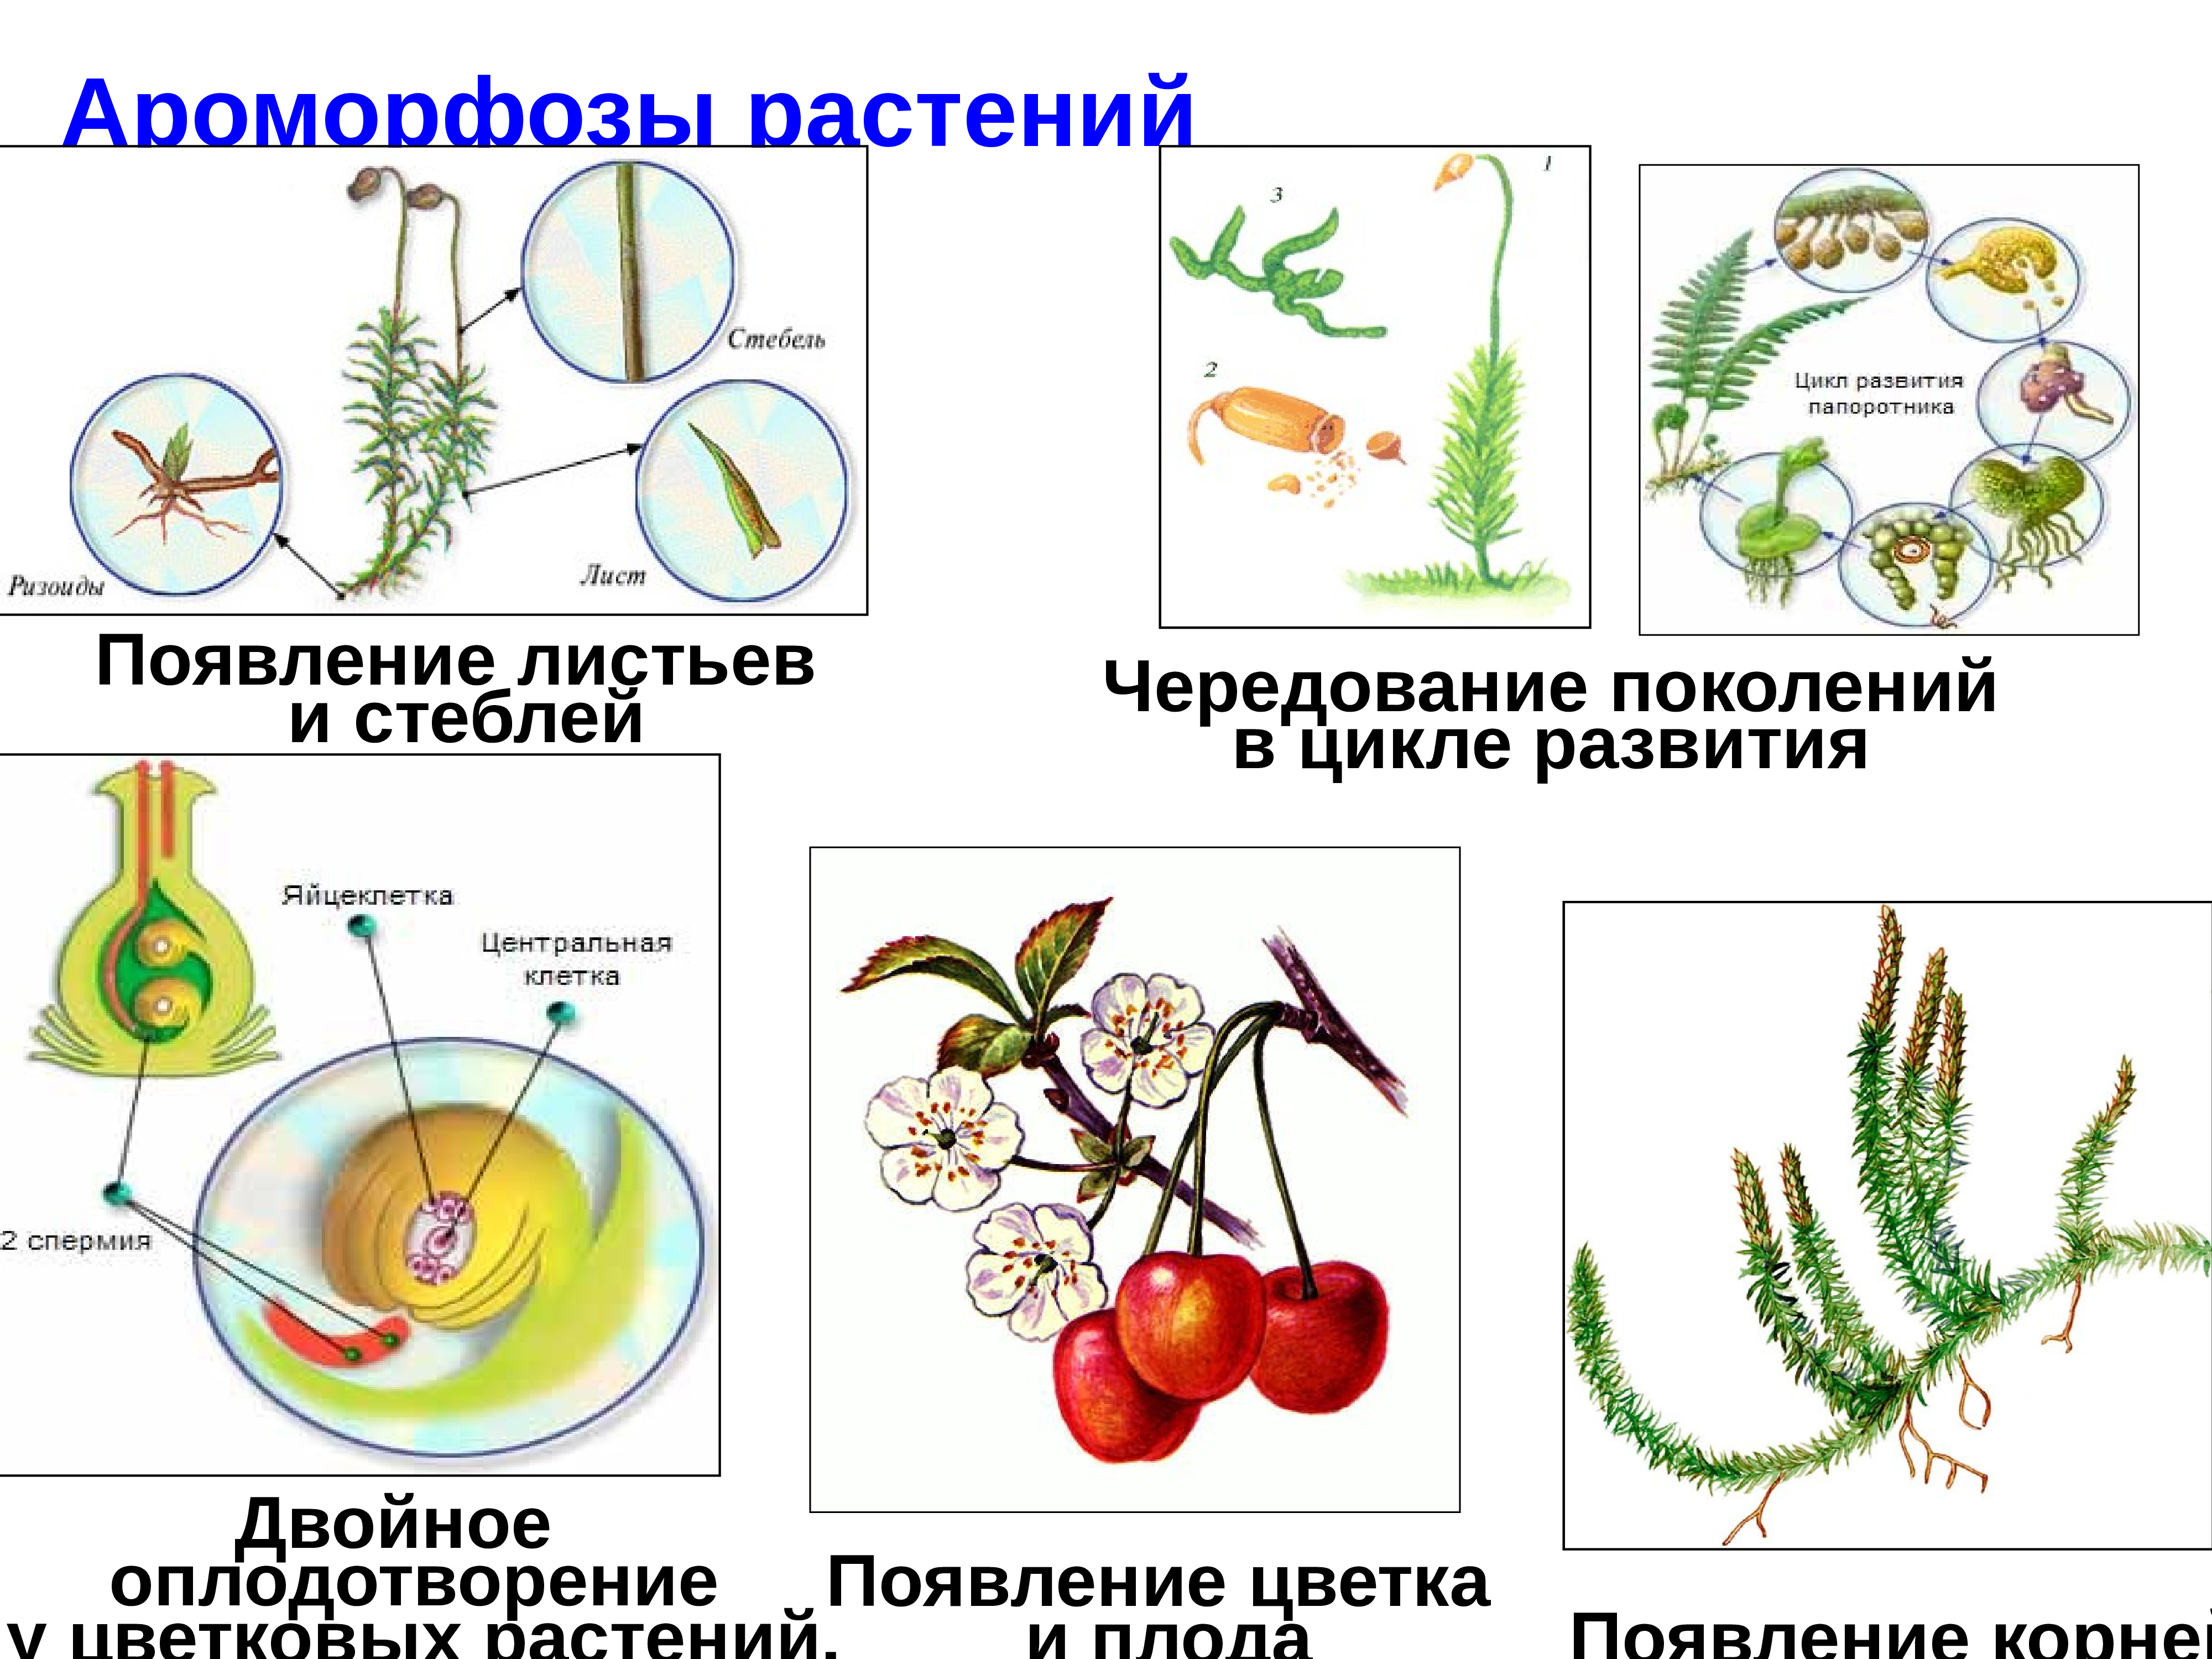 Ароморфоз покрытосеменных примеры. Ароморфозы растений. Ароморфоз примеры. Ароморфоз примеры у животных и растений. Примеры ароморфоза у растений примеры.